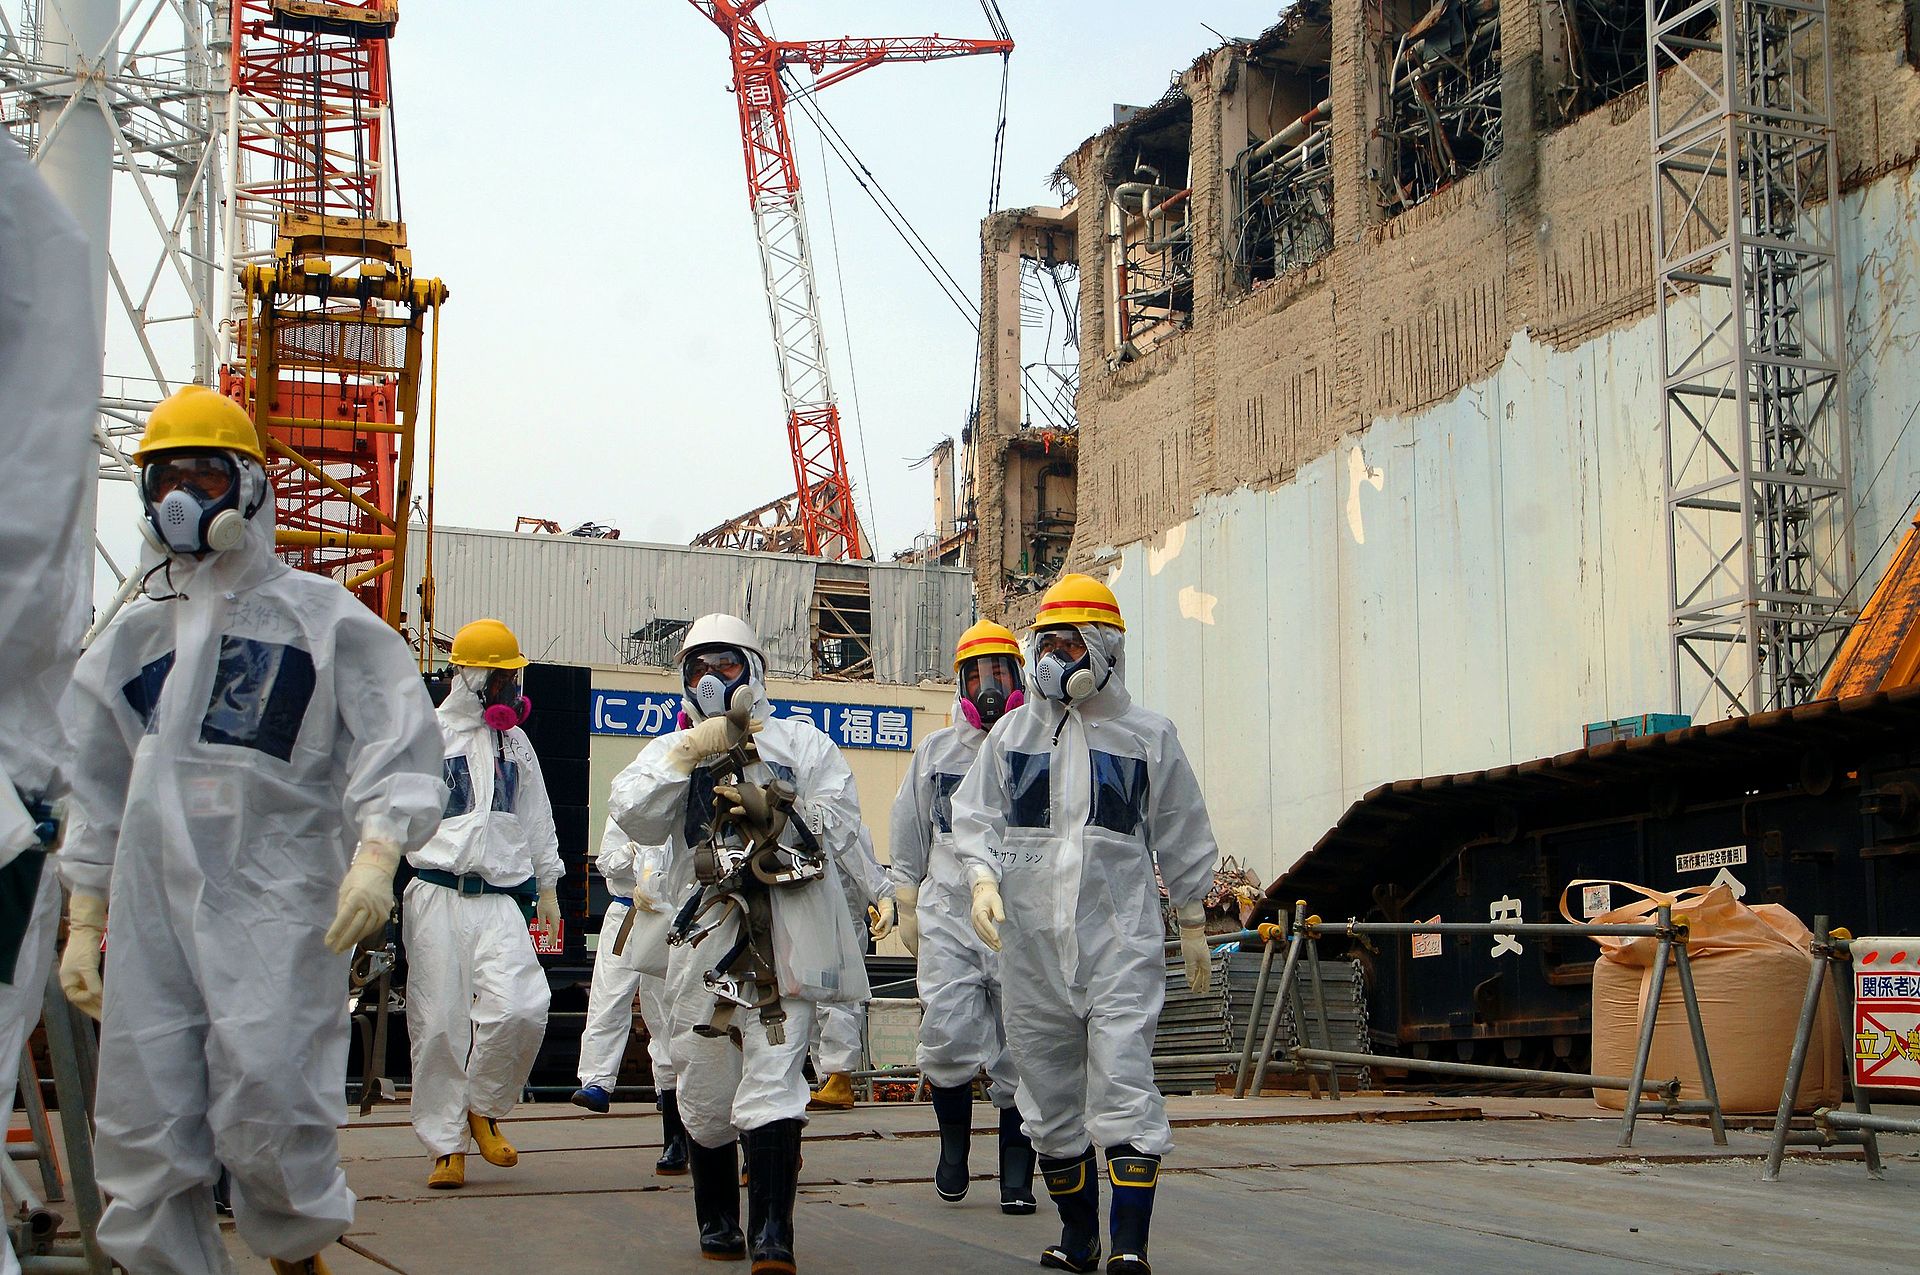 Experts at Fukushima Daiichi Nuclear Power Plant Unit 4, 2013 IAEA Imagebank CC BY-SA 2.0